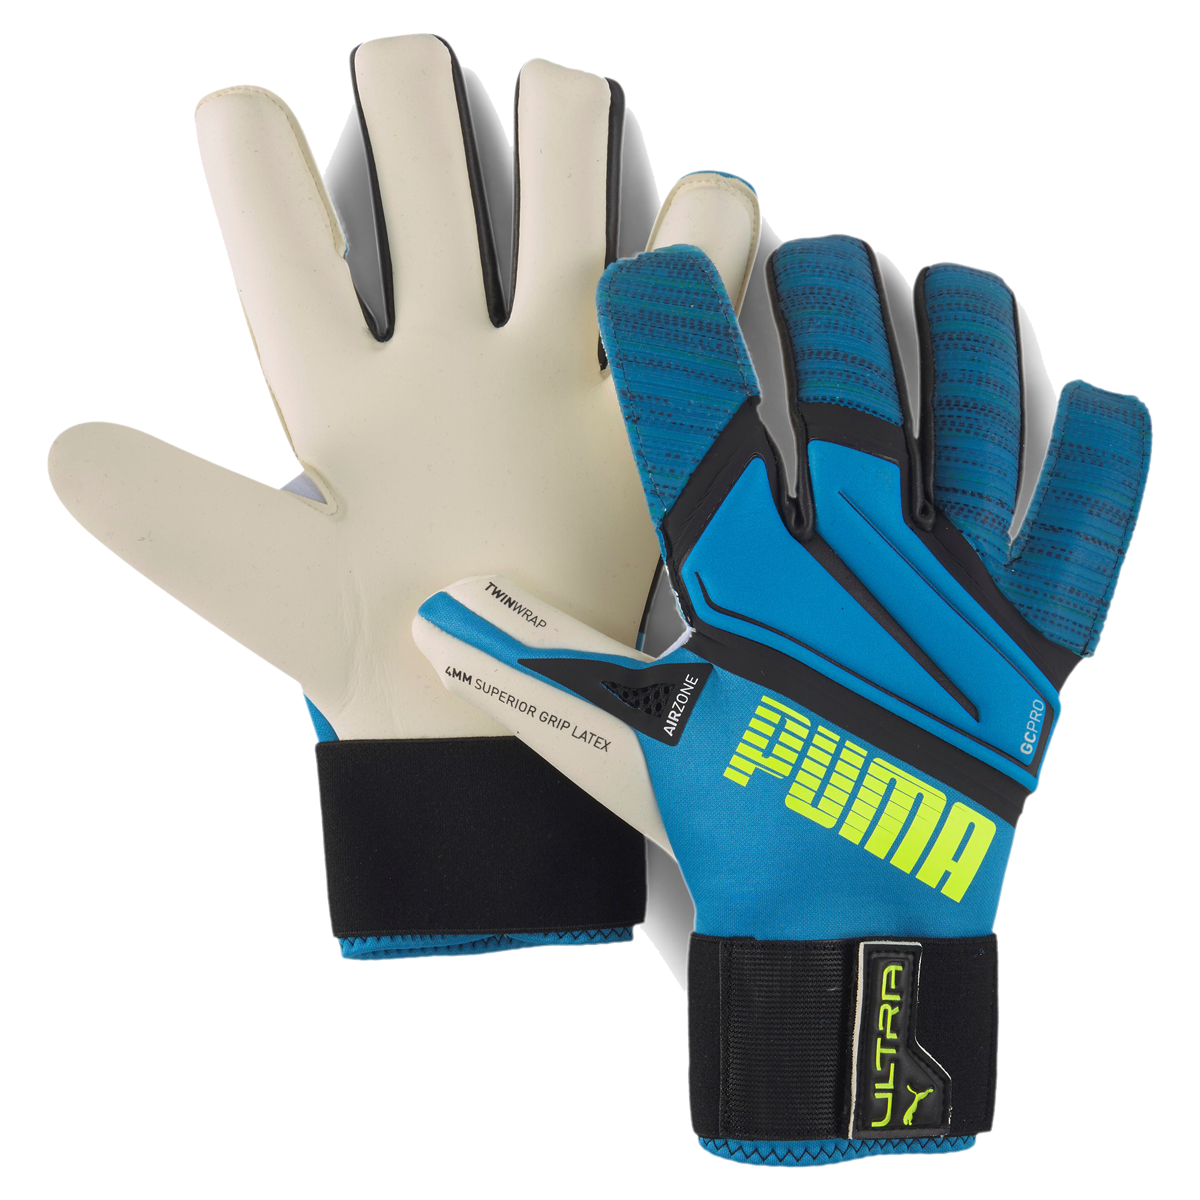 Puma ULTRA Grip 1 Hybrid Pro modrá/bílá Uk 10,5 Pánské